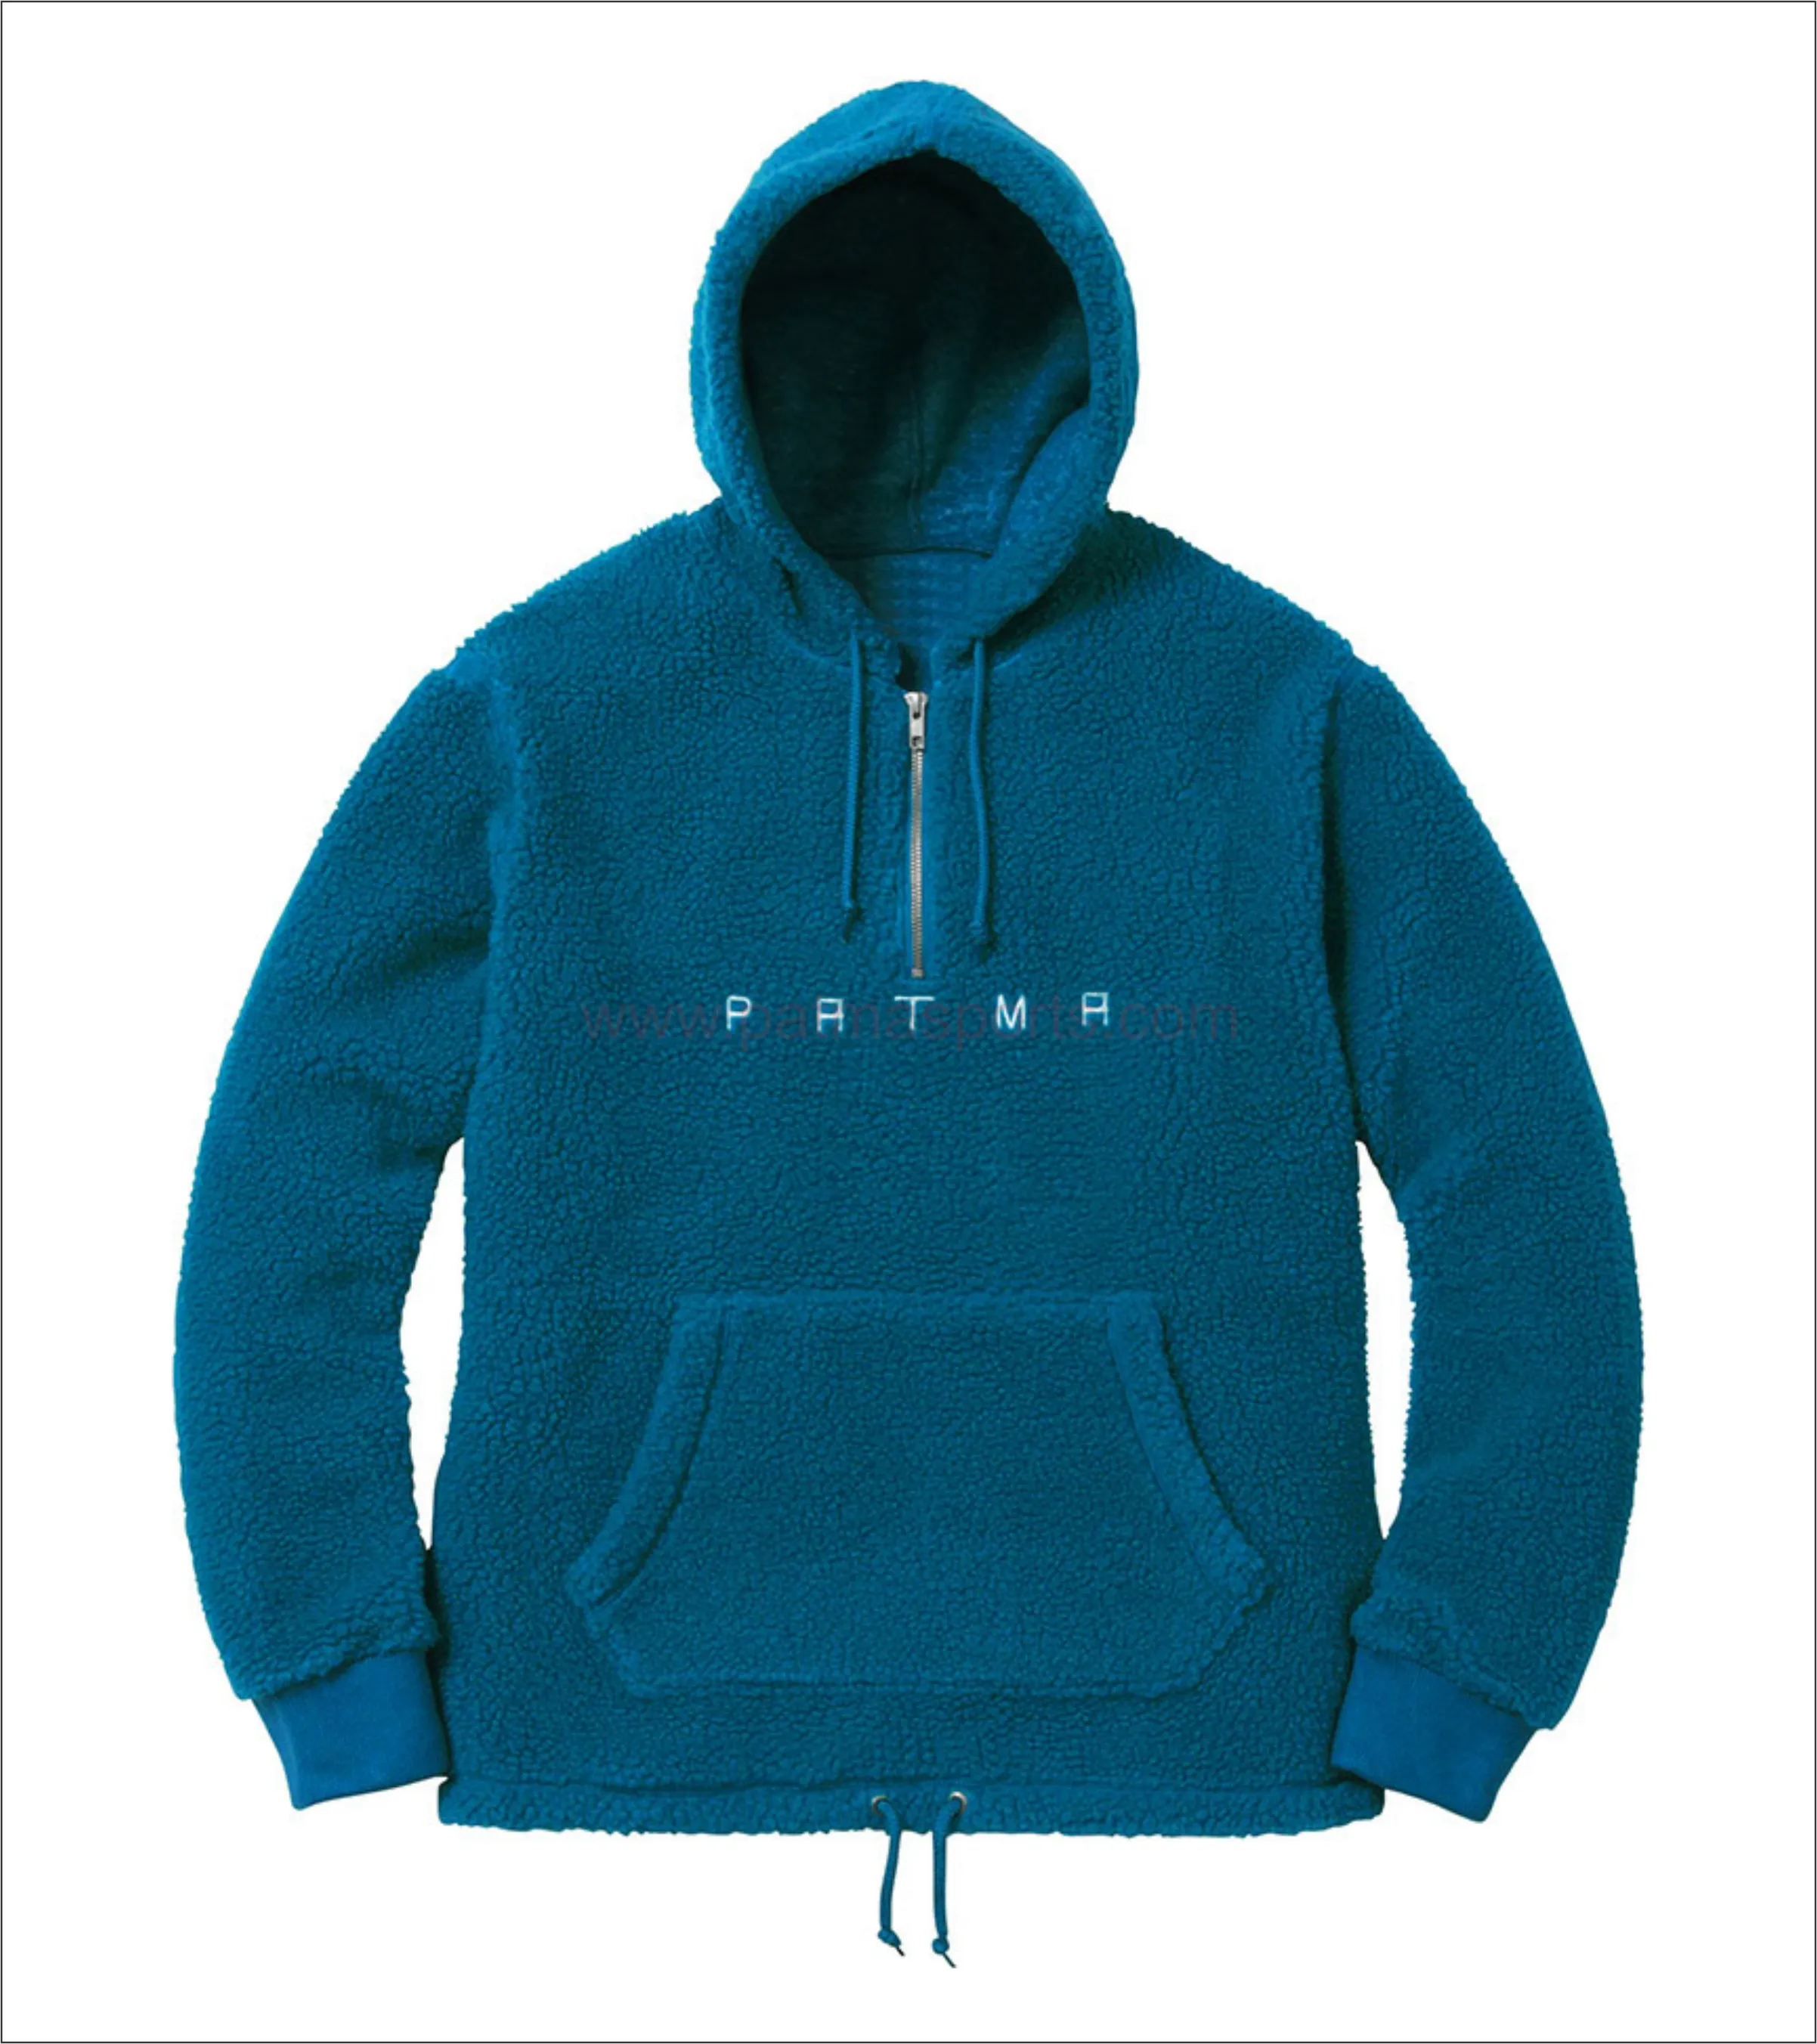 Custom Made Sherpa Fleece Hoody Met Uw Aangepaste Borduren Logo Op Het Beschikbaar In Meer dan 50 Kleuren Street Wear apparels